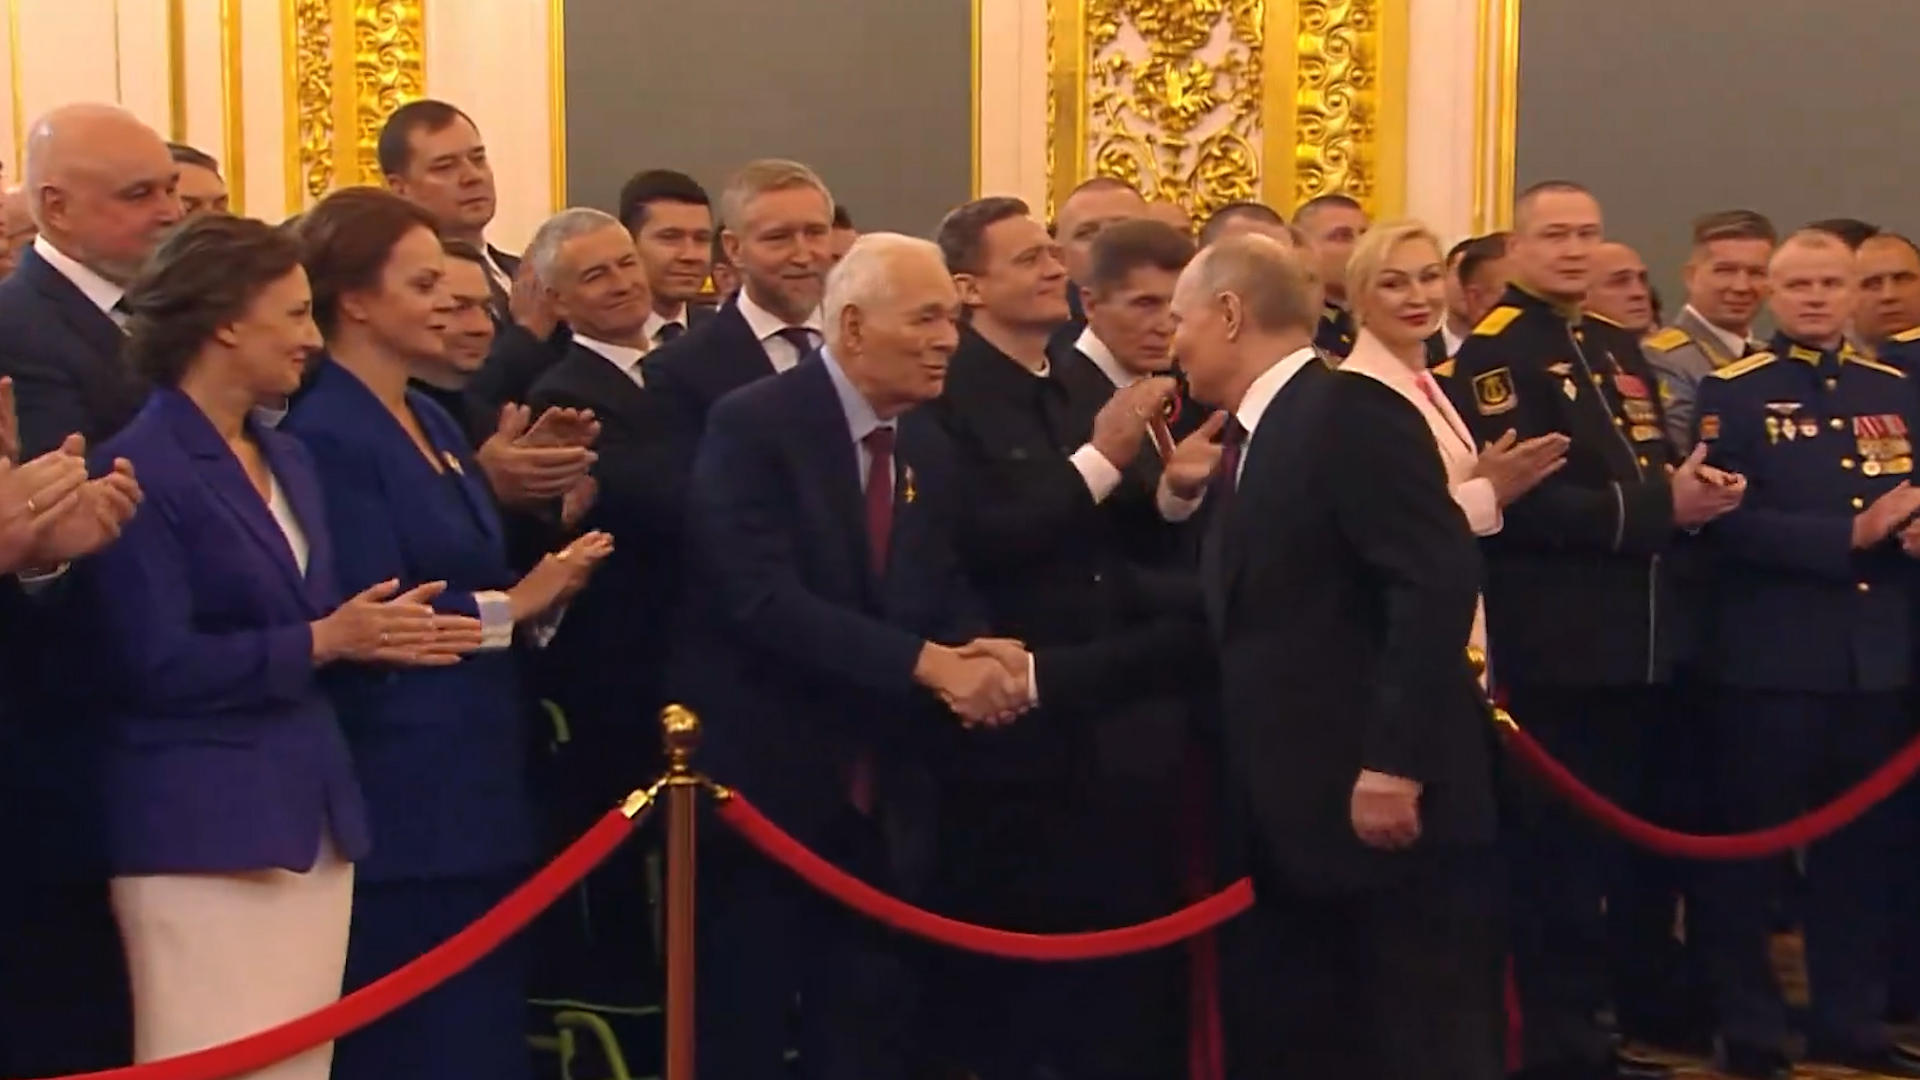 普京宣誓就任俄罗斯新一届总统 登台前“急刹车”与出席代表握手